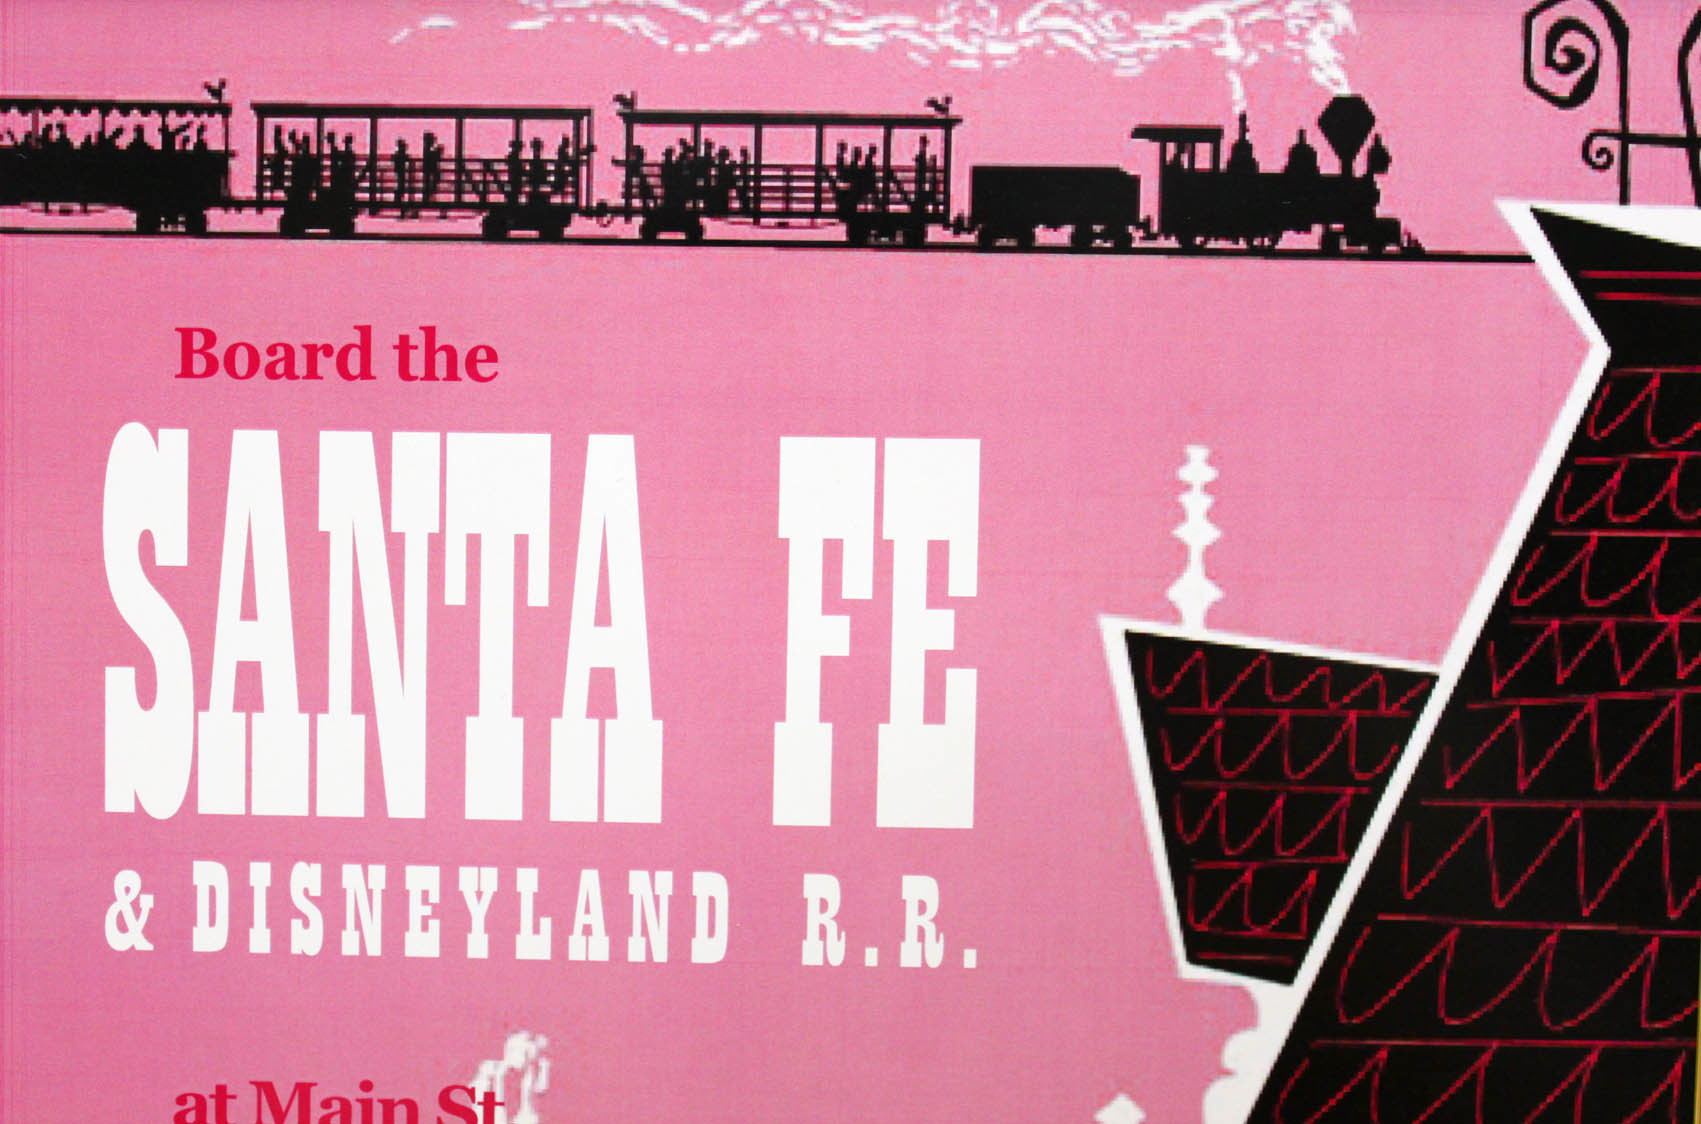 ディズニー テーマパーク メインストリートusa サンタフェ ディズニーランド鉄道 展示用フック付ポスター ディズニー絵画 ポスター